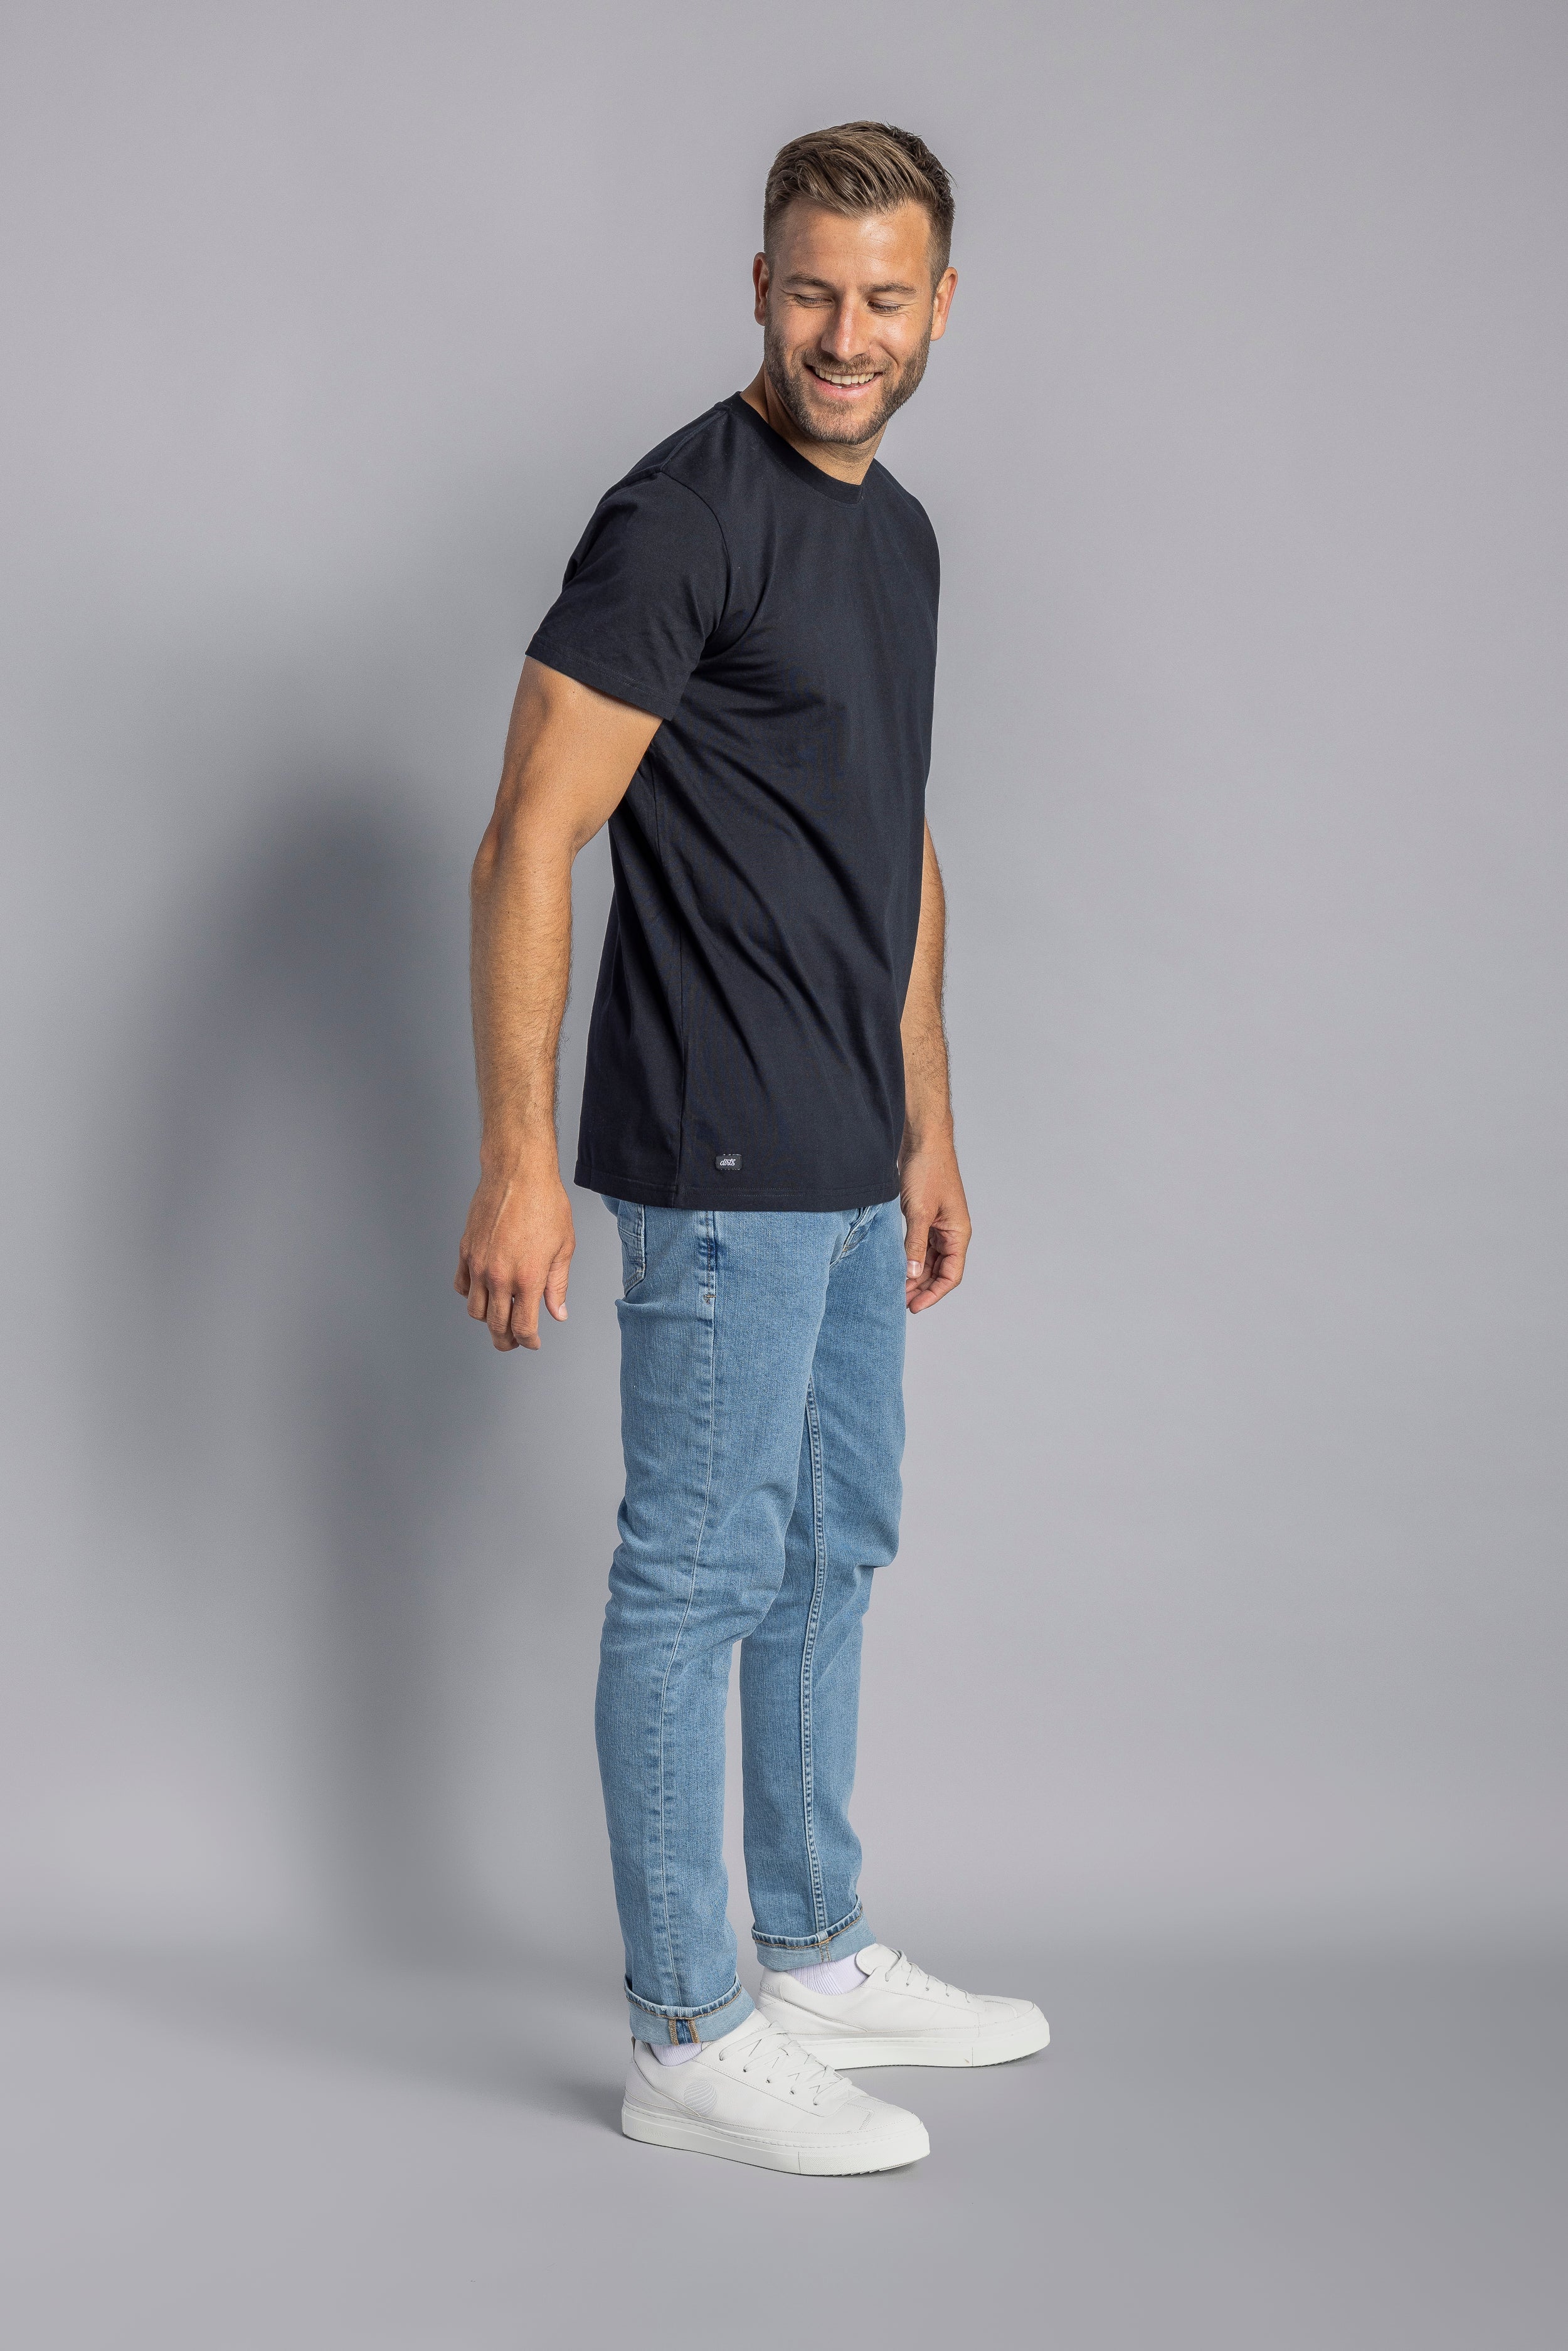 Schwarzes T-Shirt Premium Blank Slim aus 100% Bio-Baumwolle von DIRTS